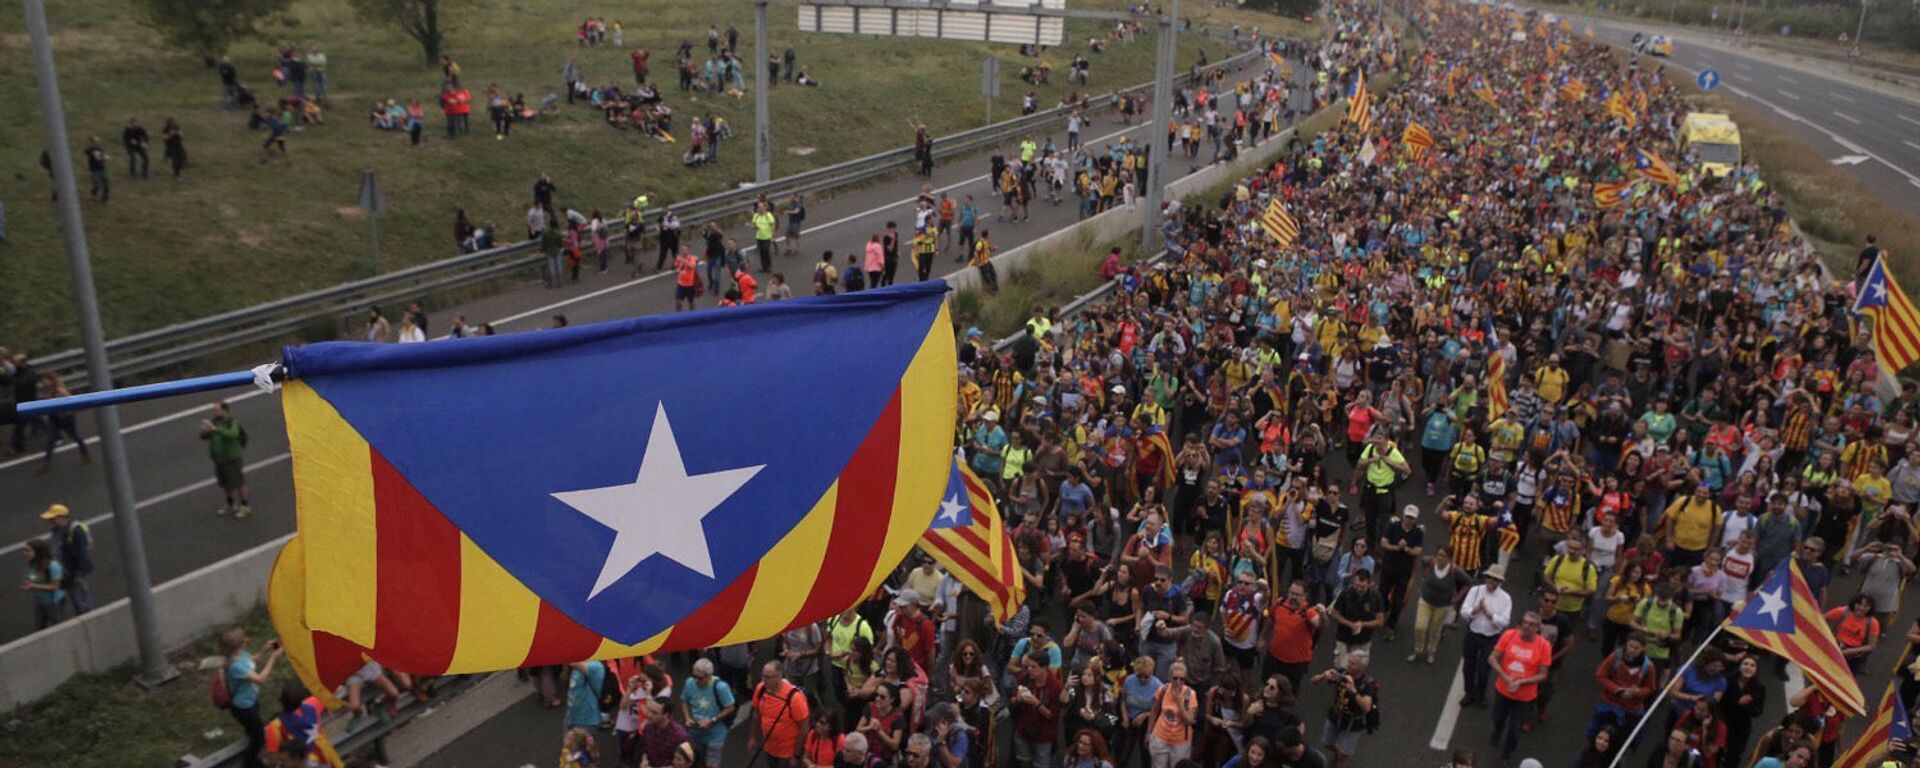 Demonstranti sa zastavama nezavisne Katalonije u protestnoj šetnji u Barseloni - Sputnik Srbija, 1920, 03.07.2021